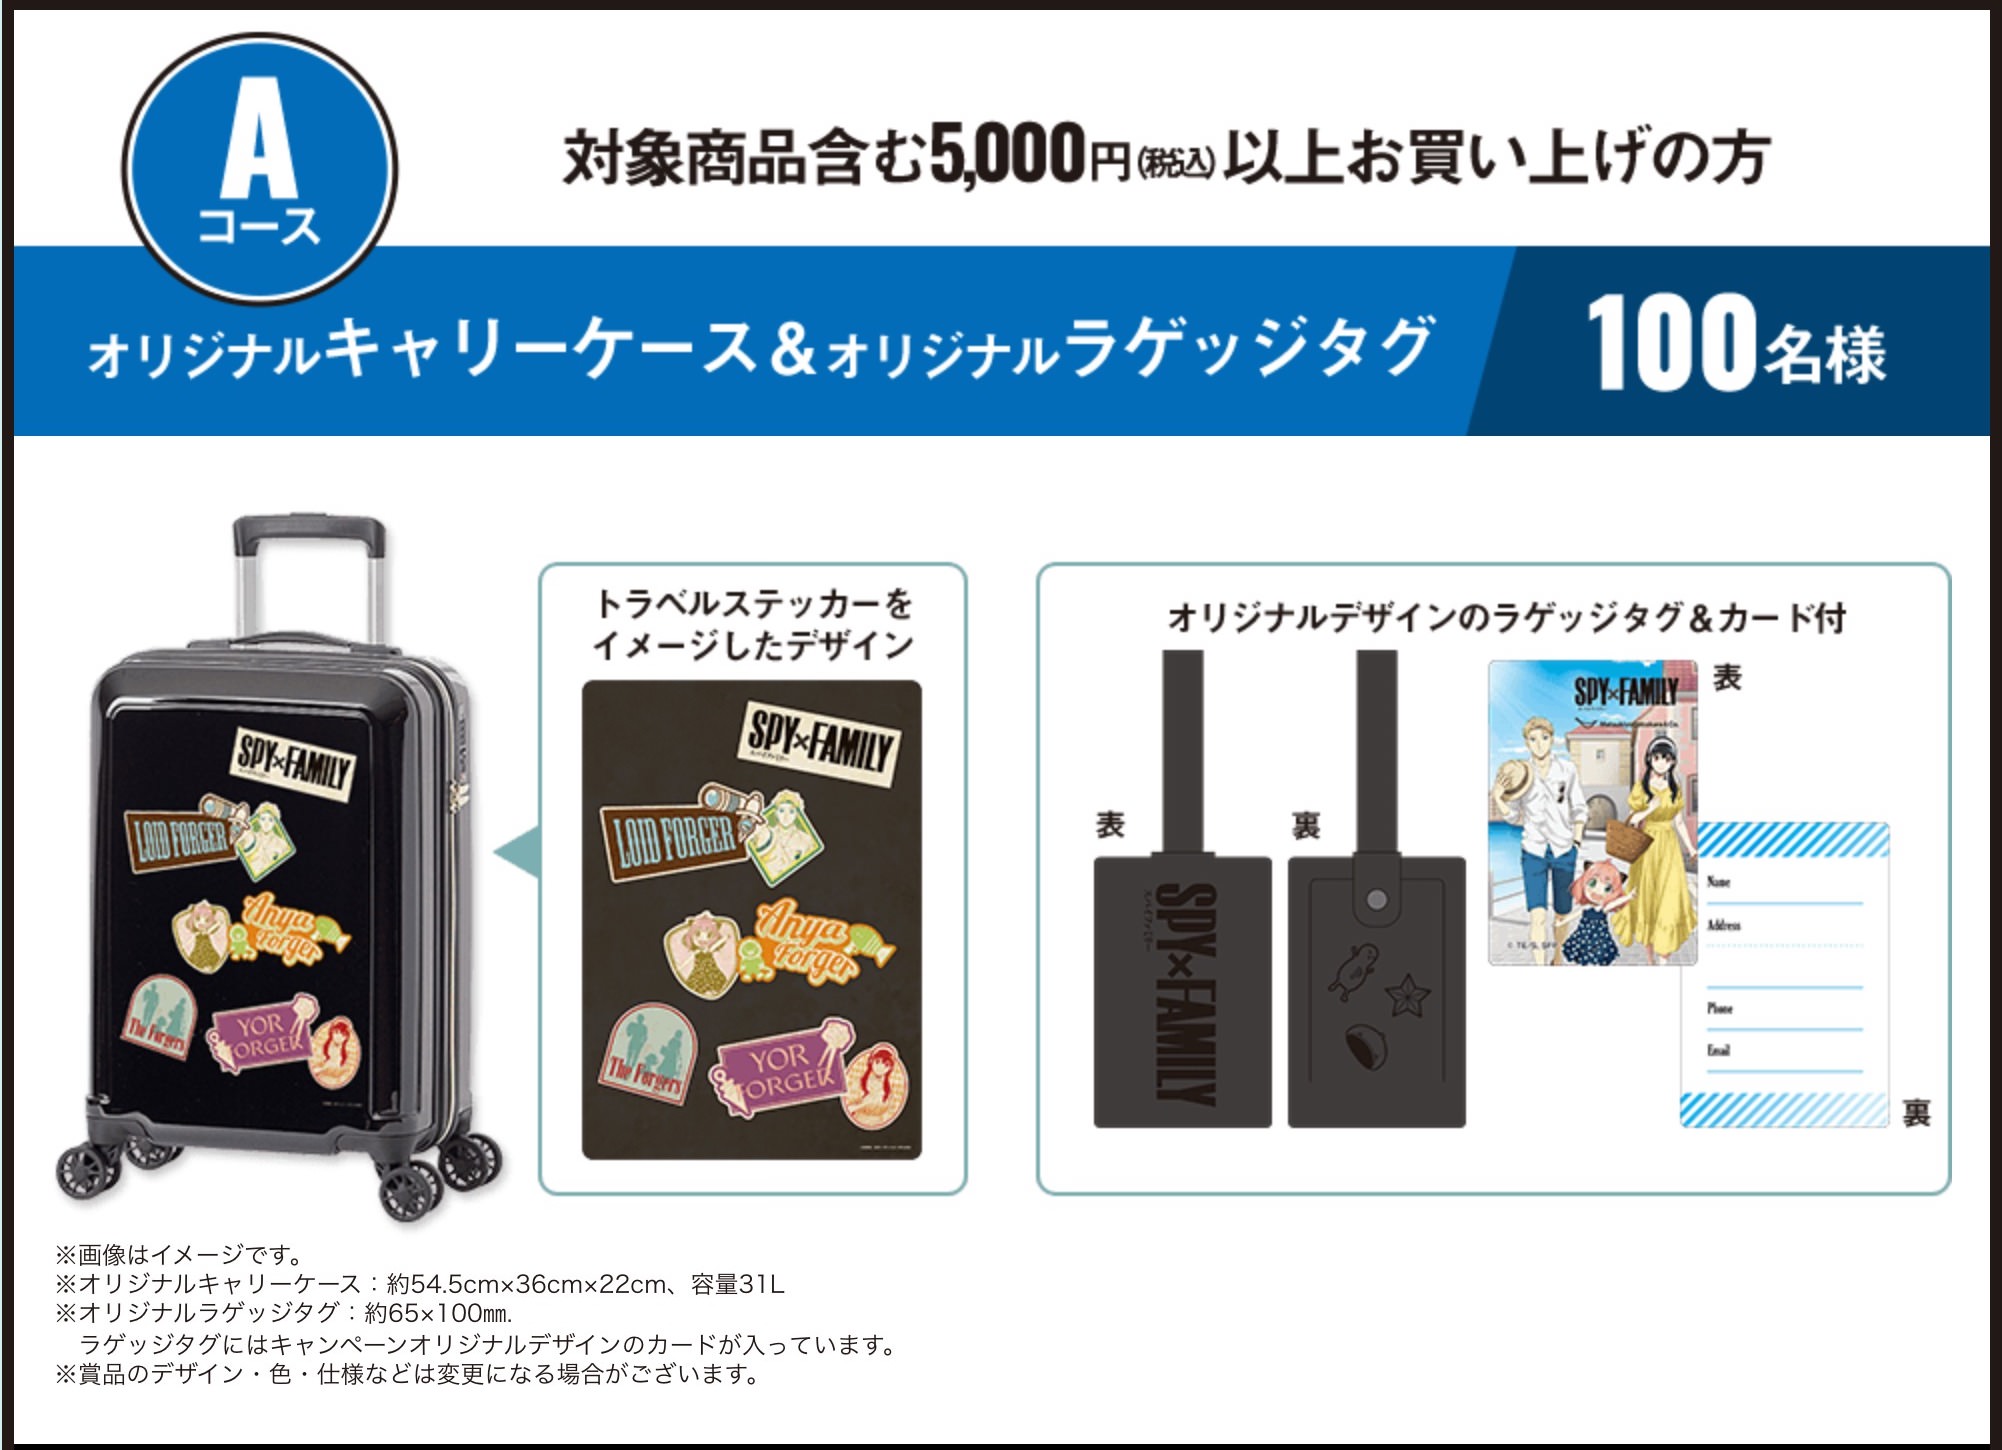 スパイファミリー × マツキヨ & ココカラ 5月16日よりコラボ実施!